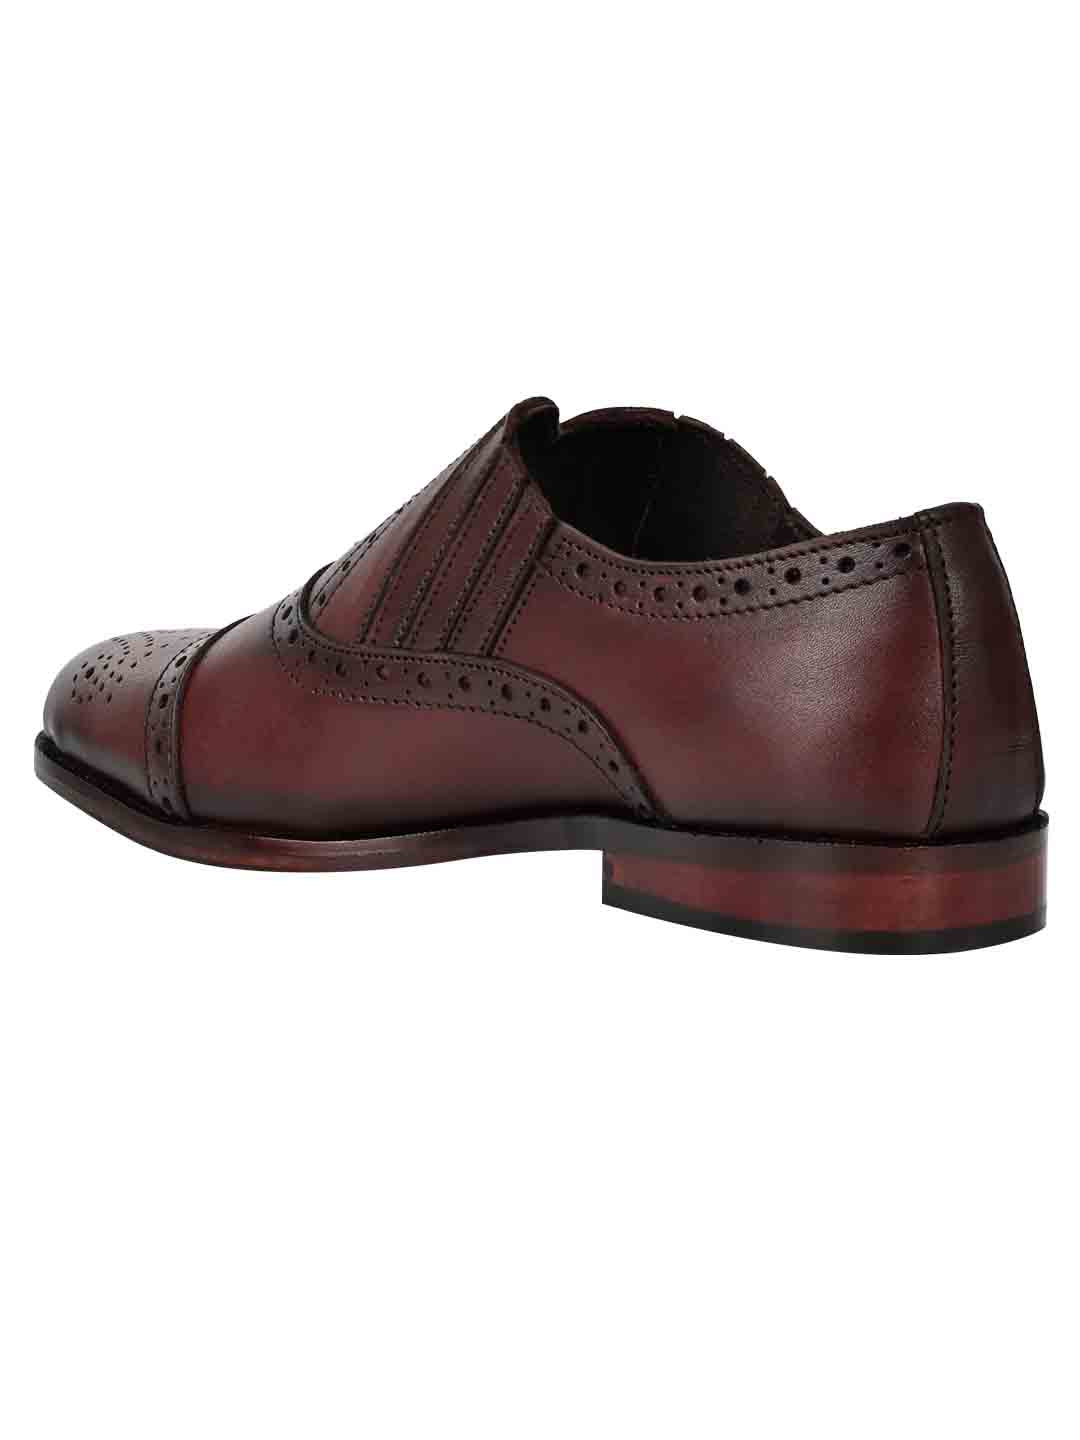 Footwear, Men Footwear, Burgundy Oxford Shoes